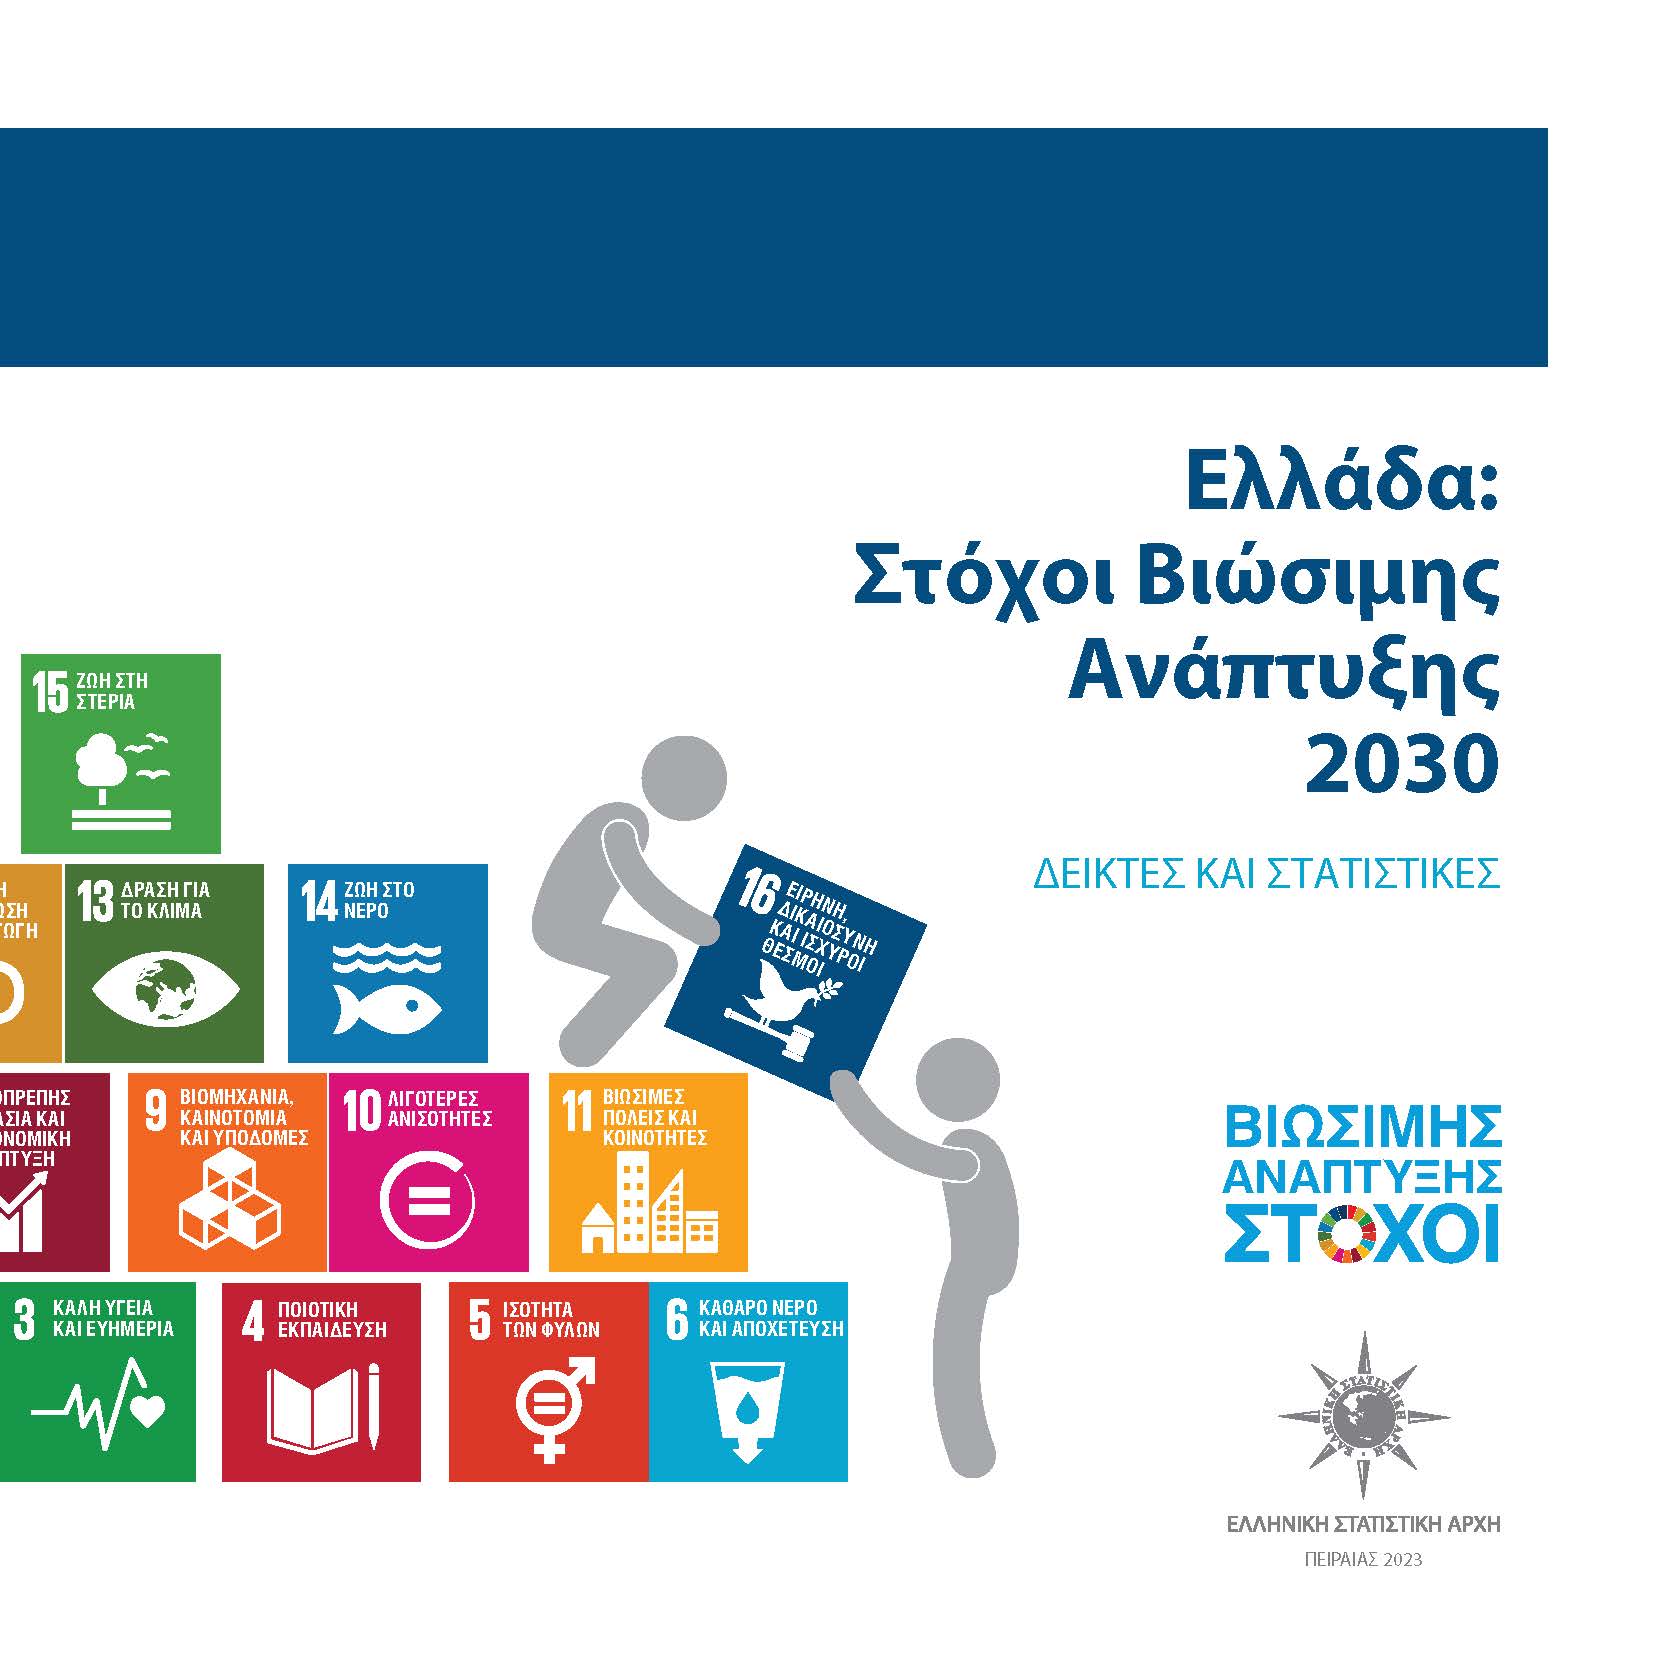 Στόχοι Βιώσιμης Ανάπτυξης 2030